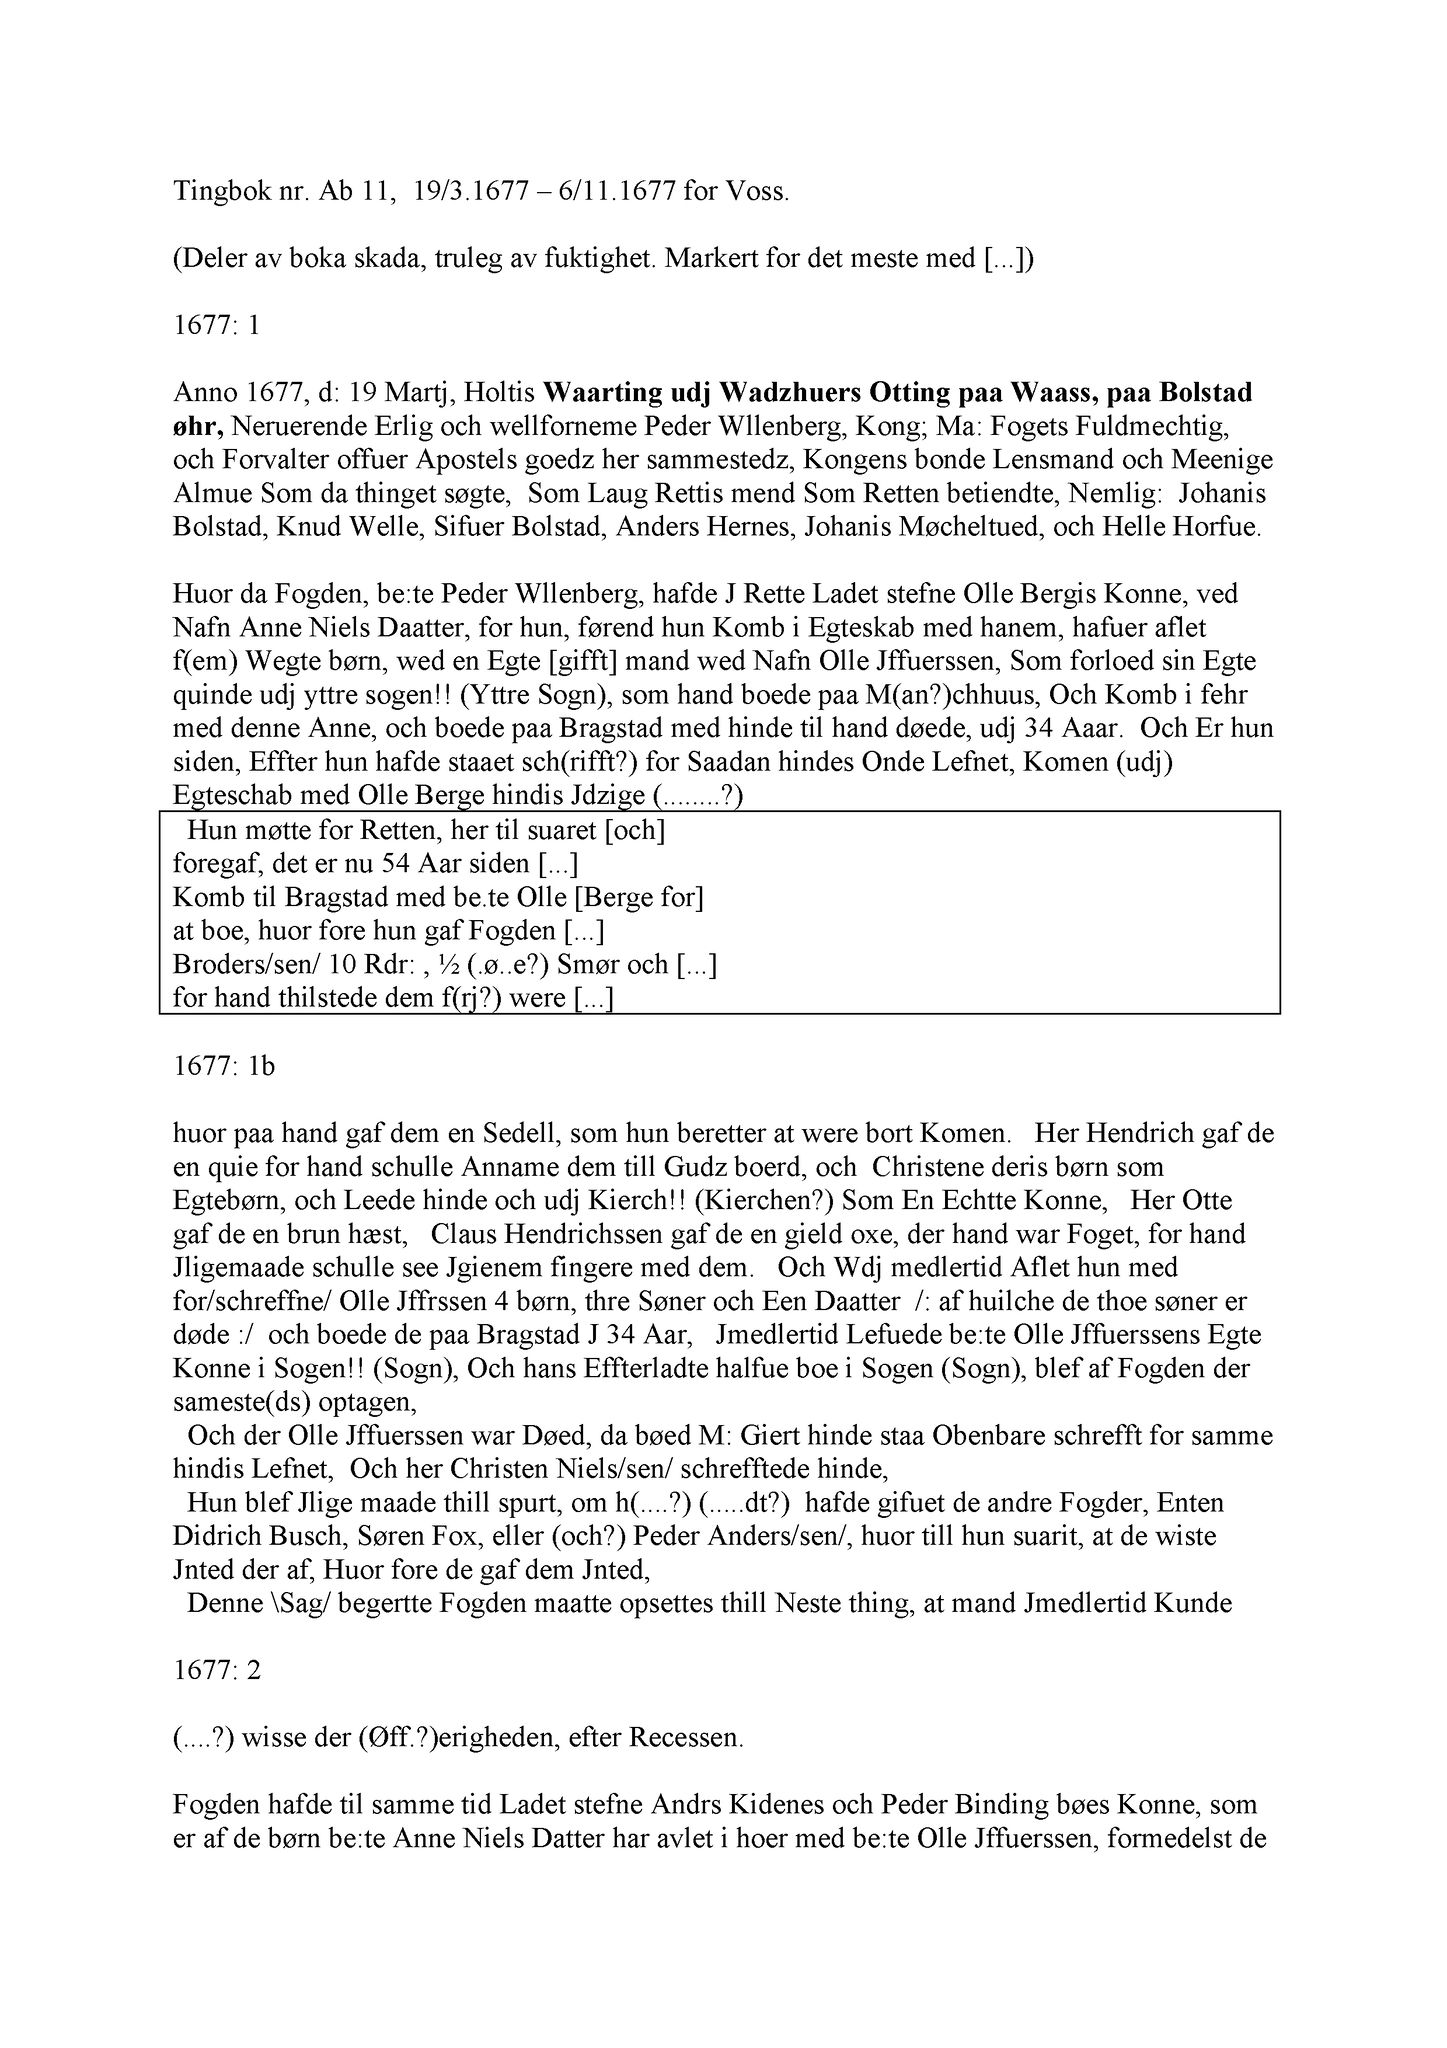 Samling av fulltekstavskrifter, SAB/FULLTEKST/A/12/0055: Hardanger og Voss sorenskriveri, tingbok nr. Ab 11 for Voss, 1677